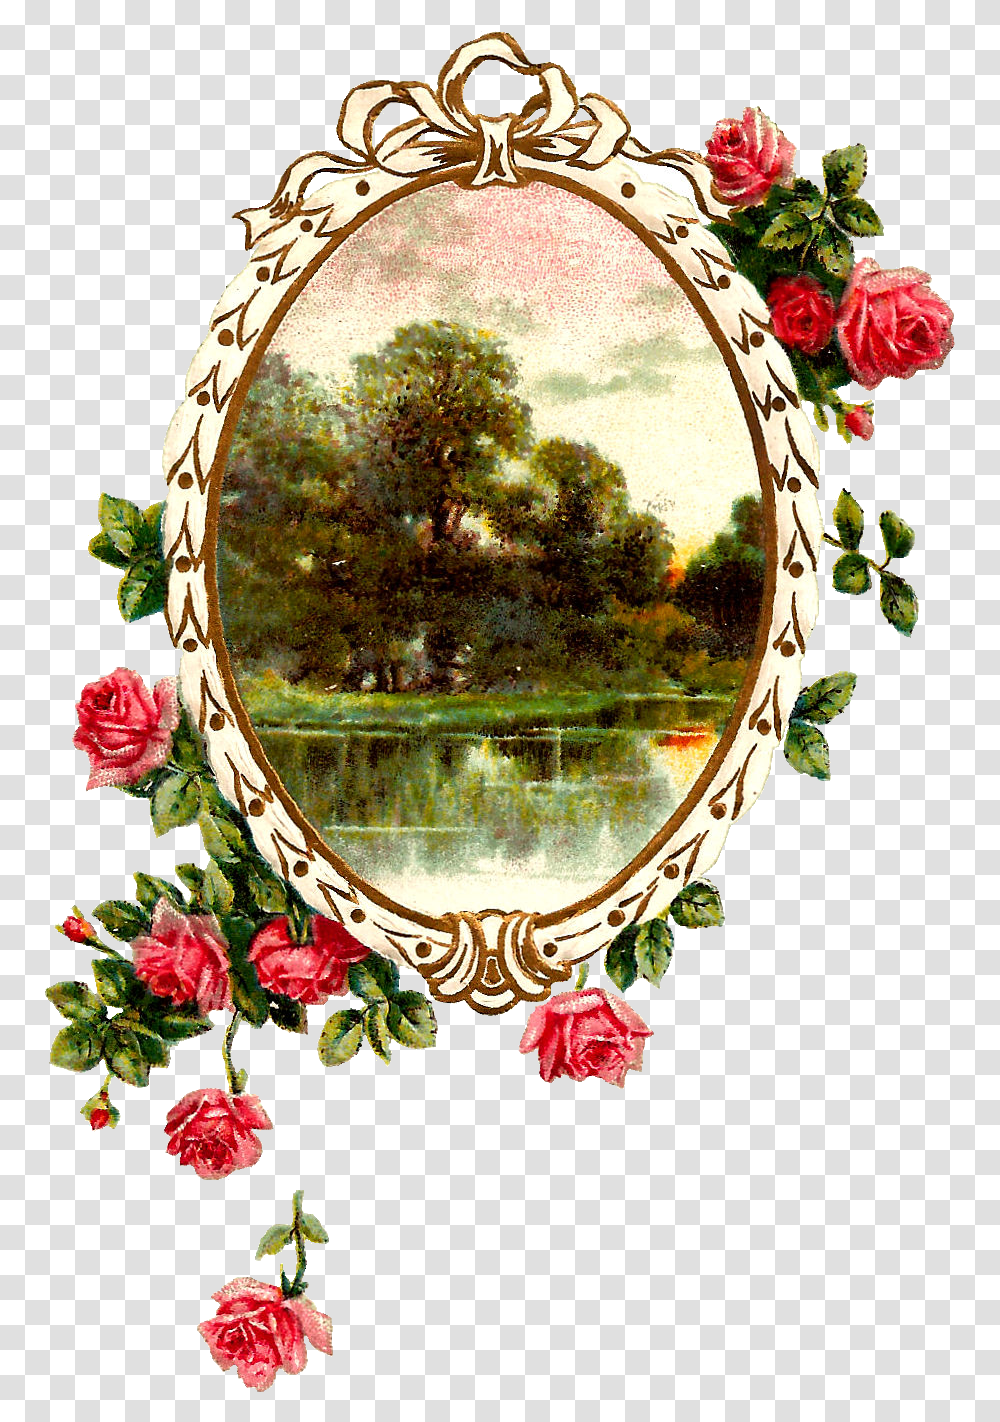 Free Digital Printable Label And Pink Rose Flower Frame Rose Flower Frames Design, Plant, Floral Design, Pattern Transparent Png